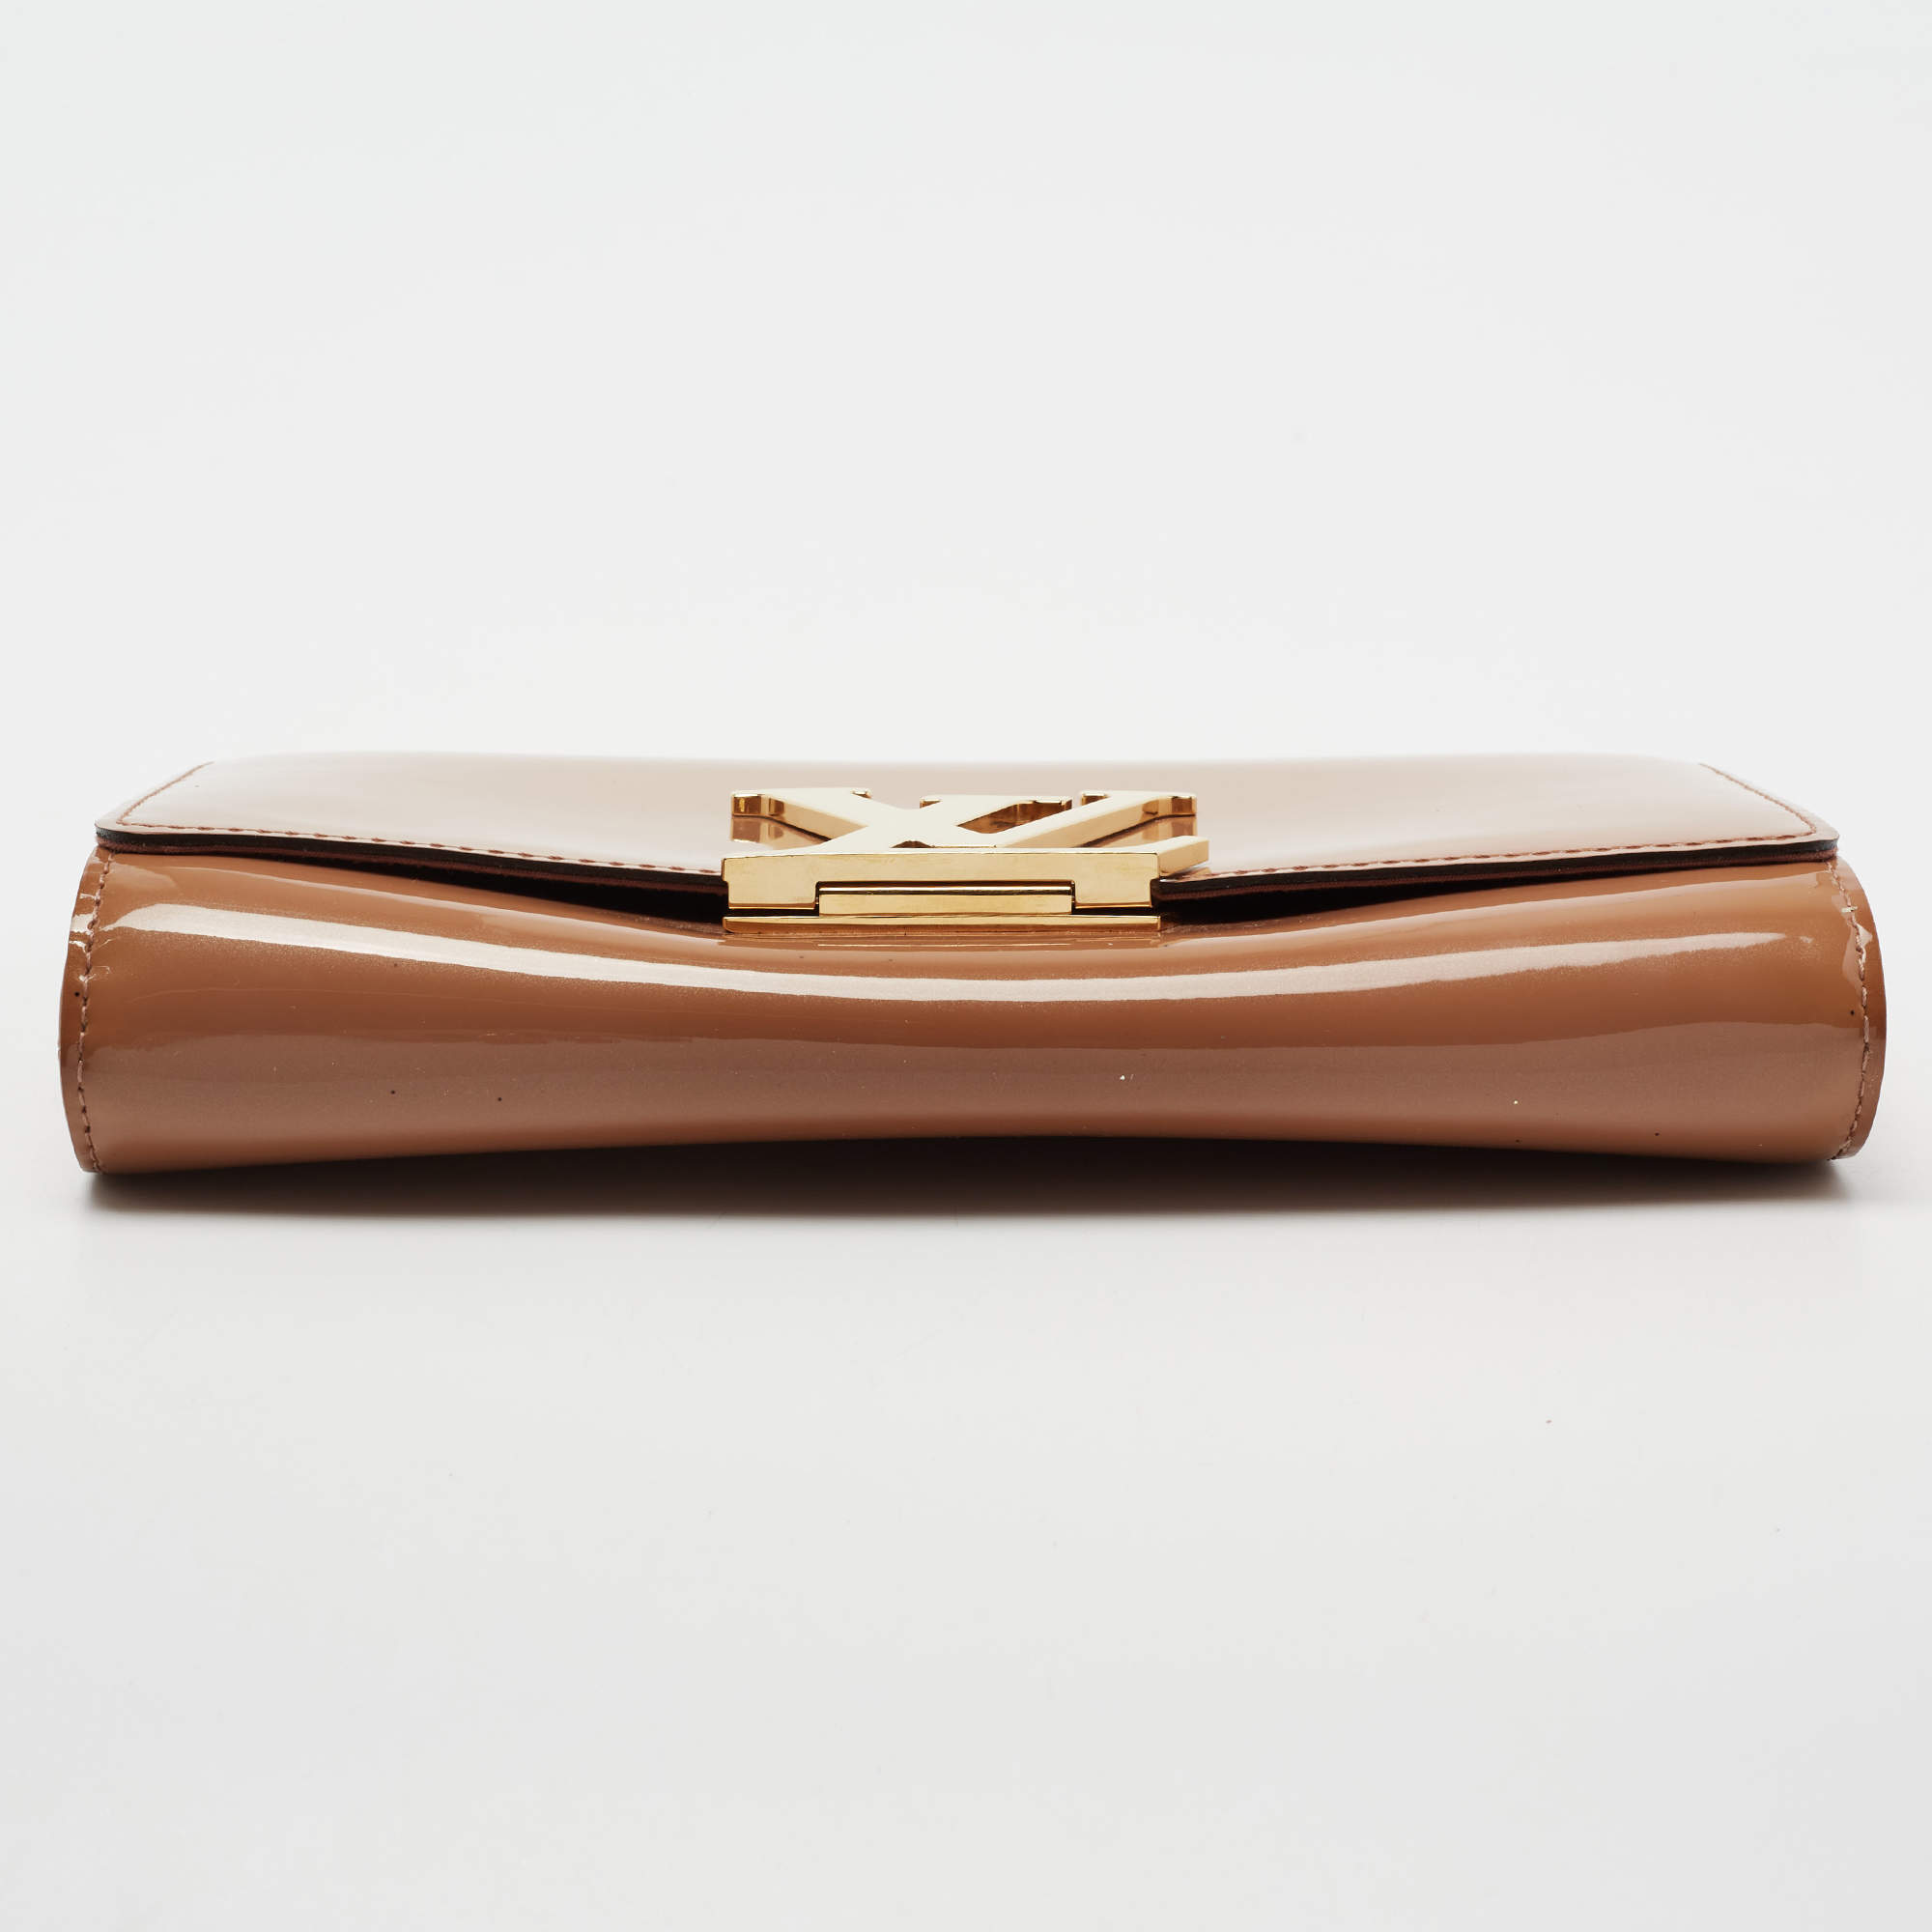 Louis Vuitton Rossmore Clutch Bag – The Luxe Pursuit